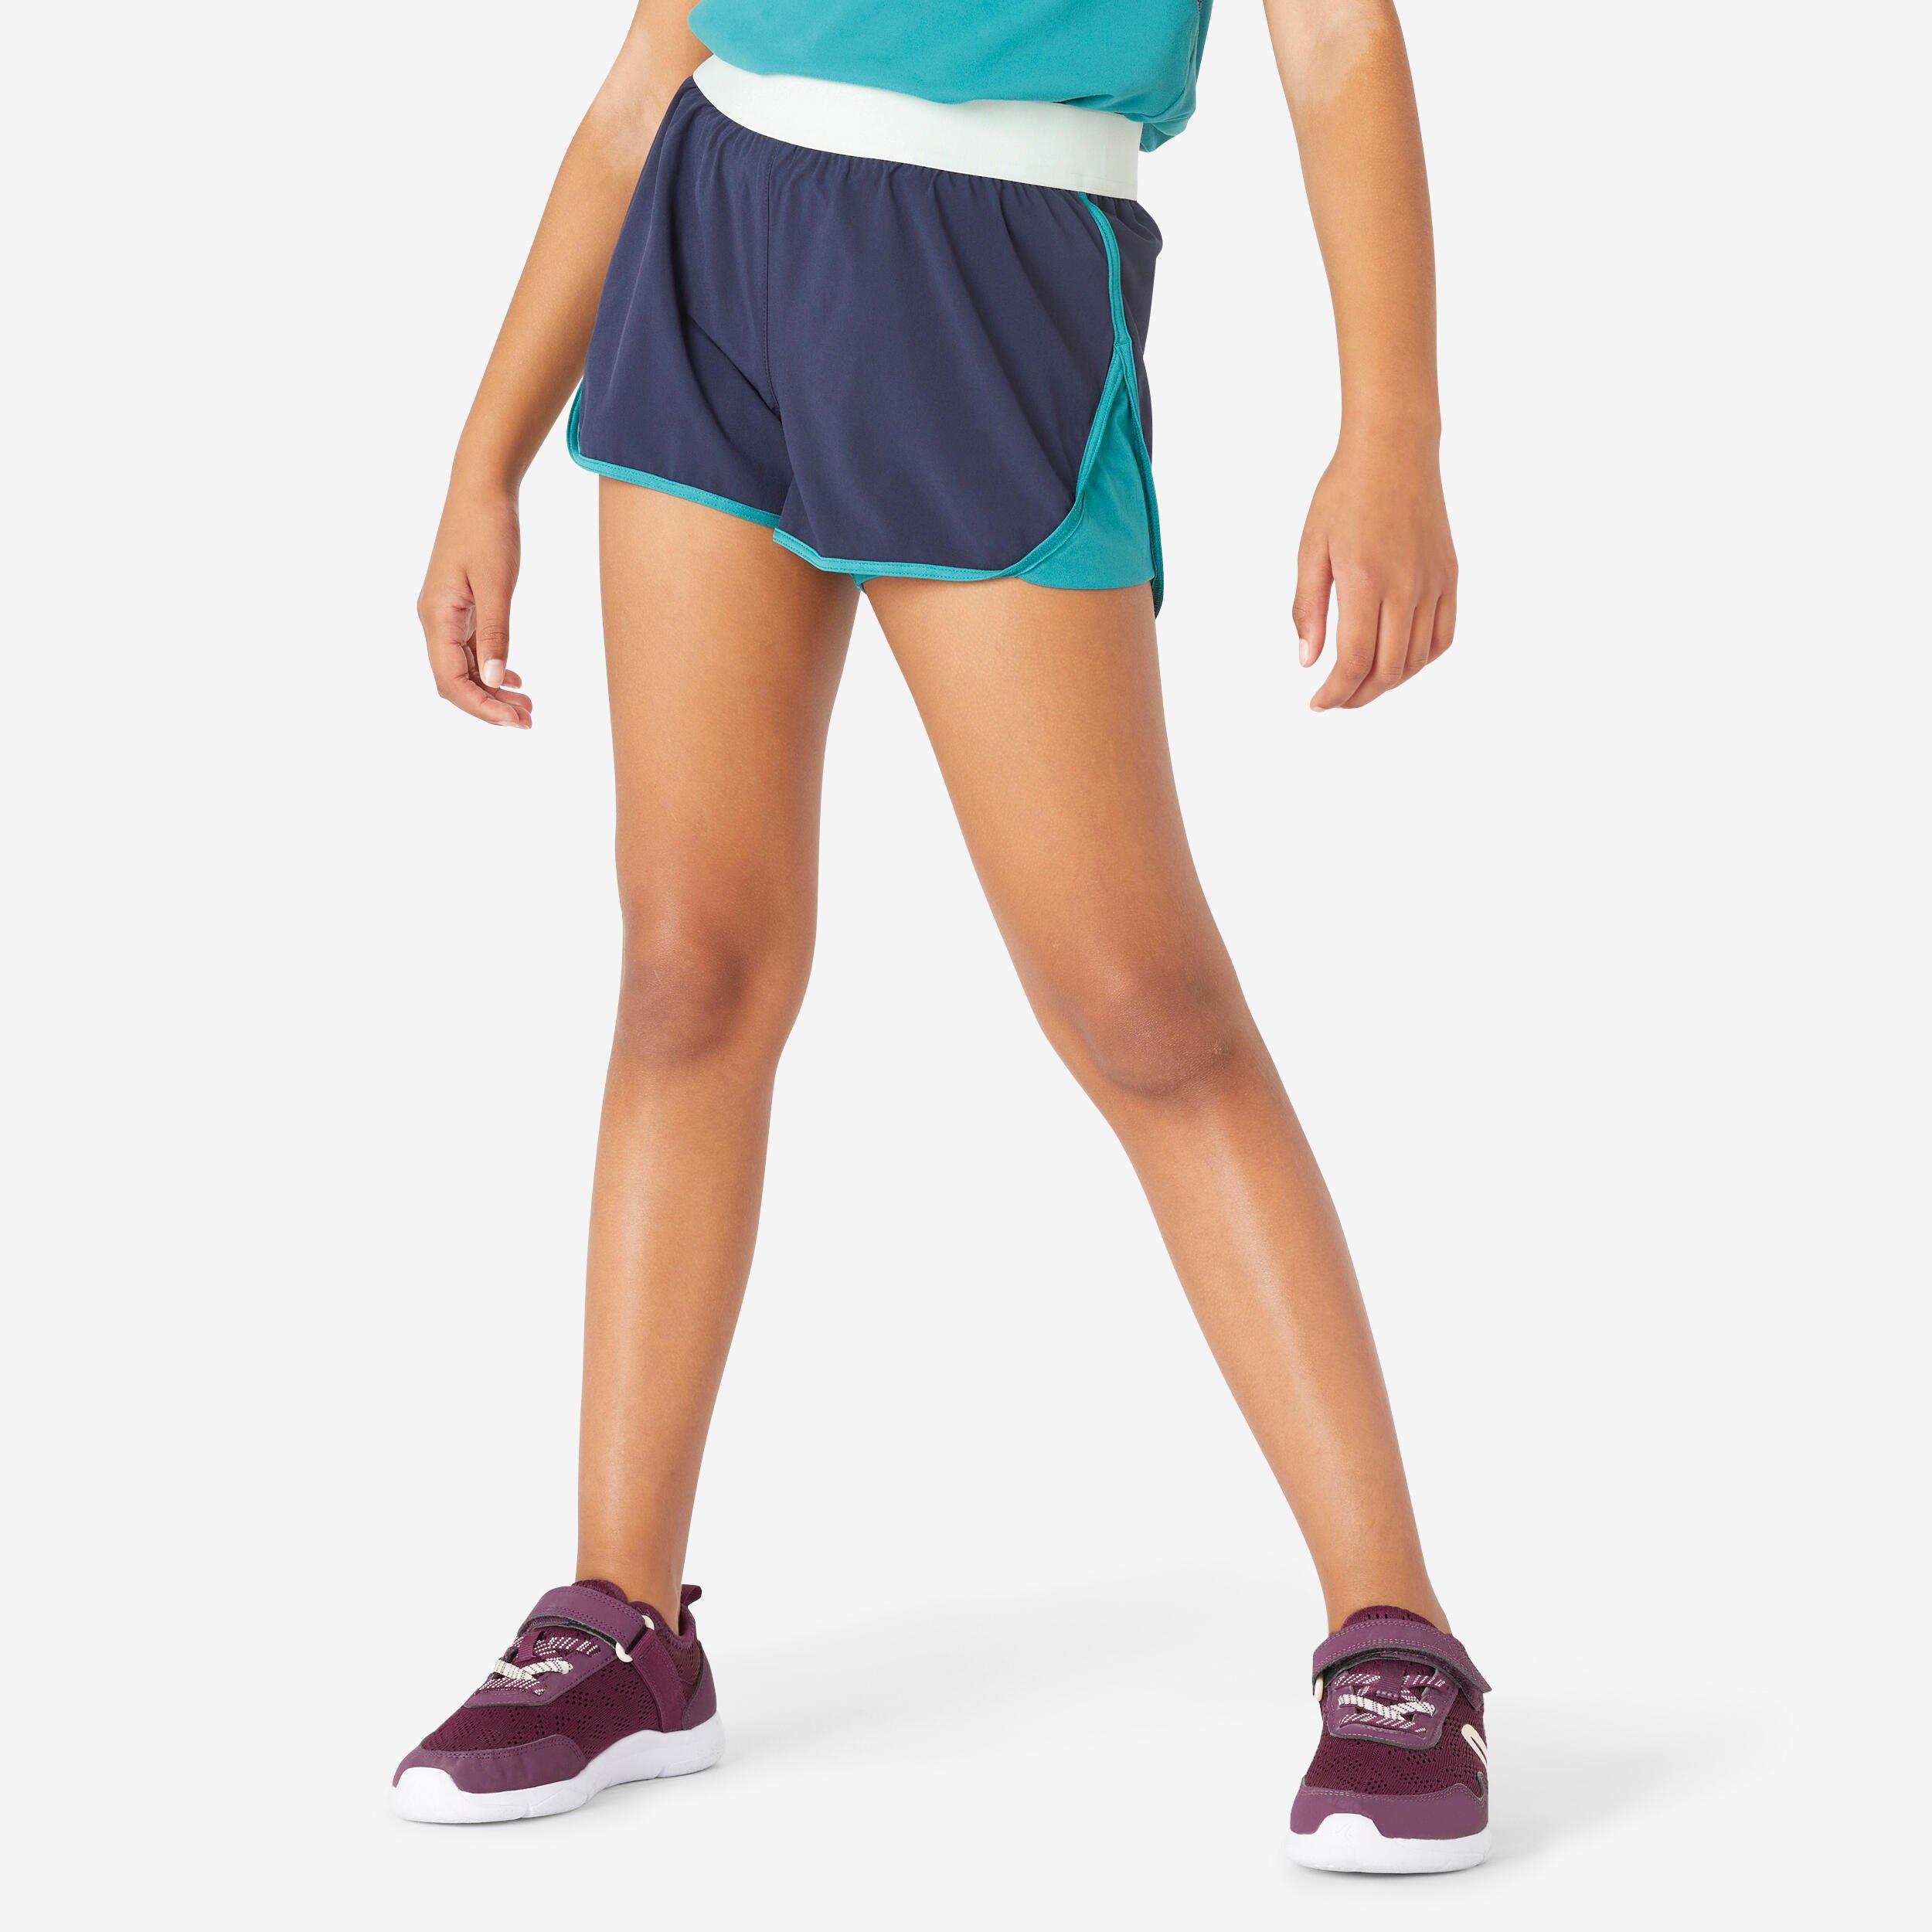 Decathlon Breathable Double Shorts